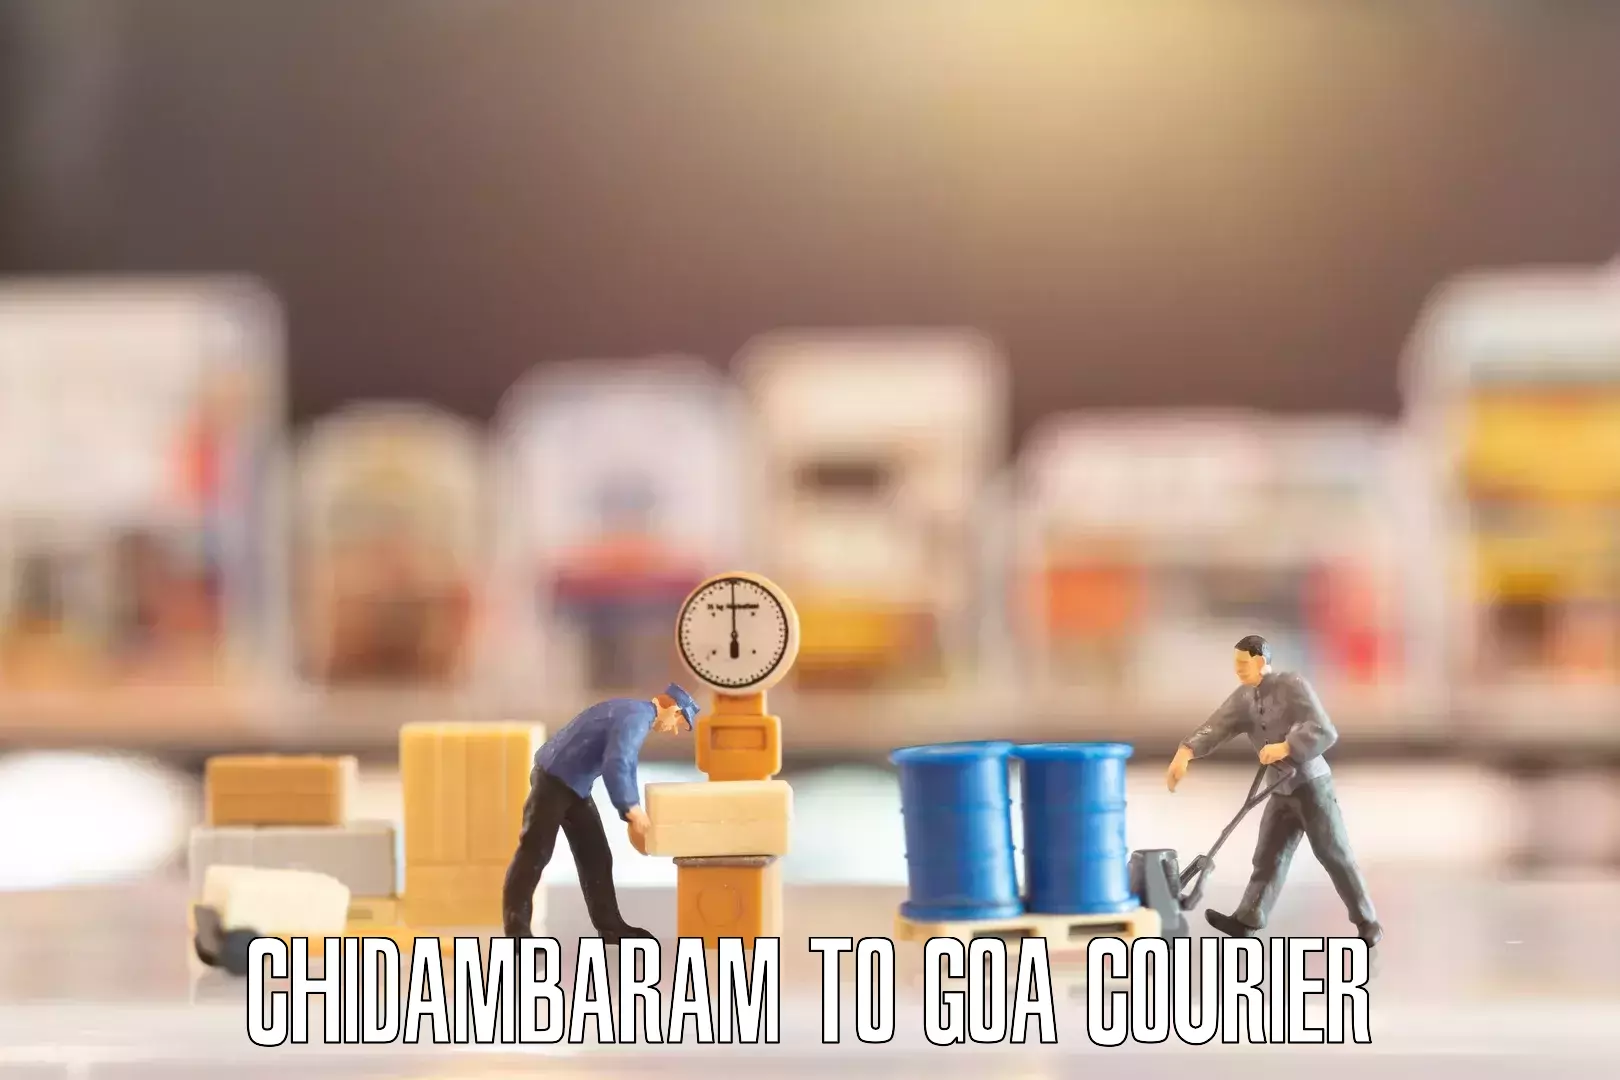 Moving and packing experts Chidambaram to Goa University